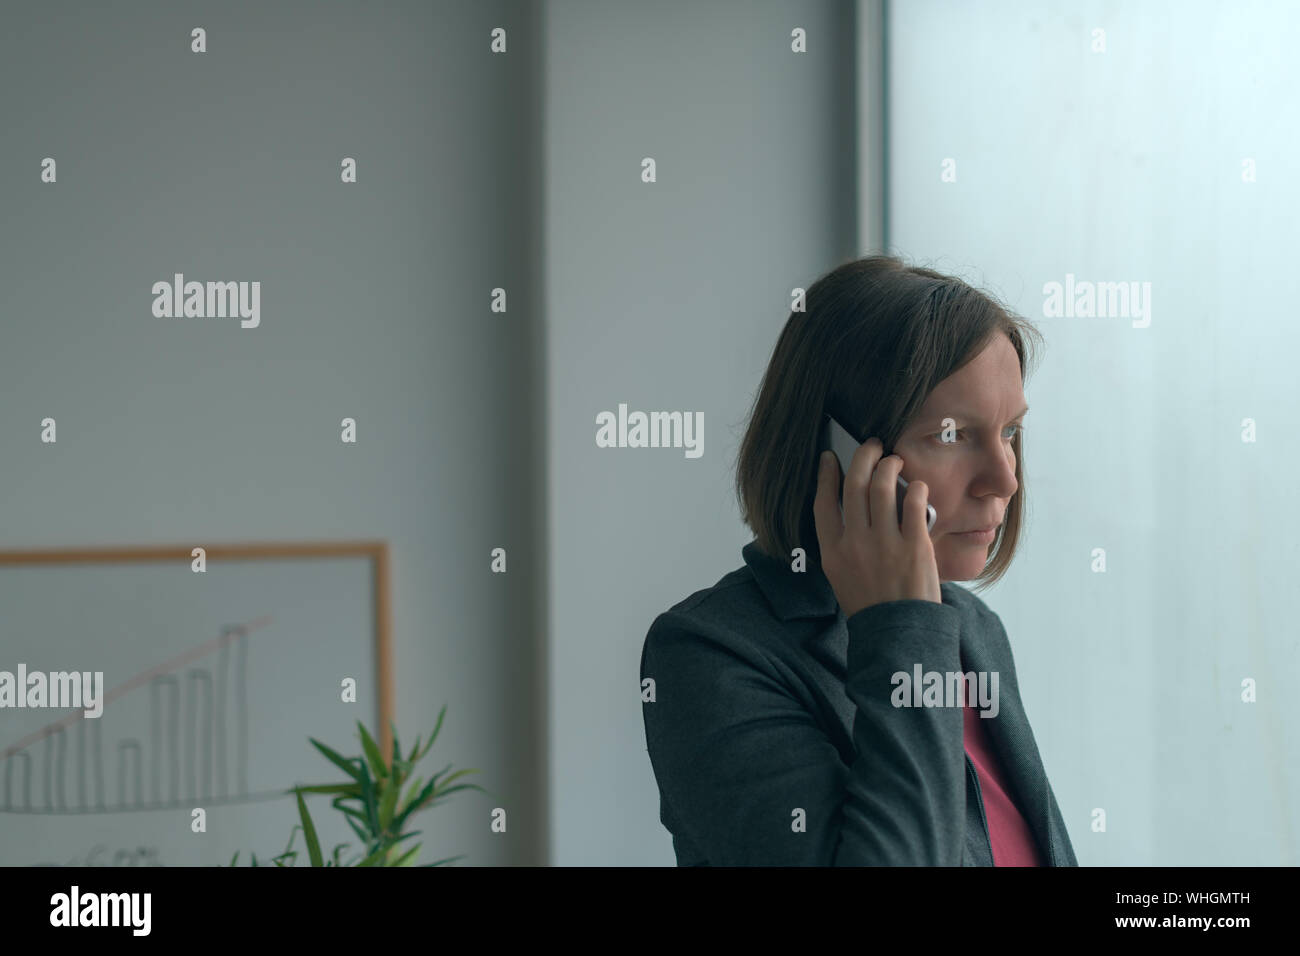 Im Handy Gespräch vom Amt Fenster Geschäftsfrau, erwachsenen weiblichen kaukasischen business Person auf dem Smartphone Stockfoto